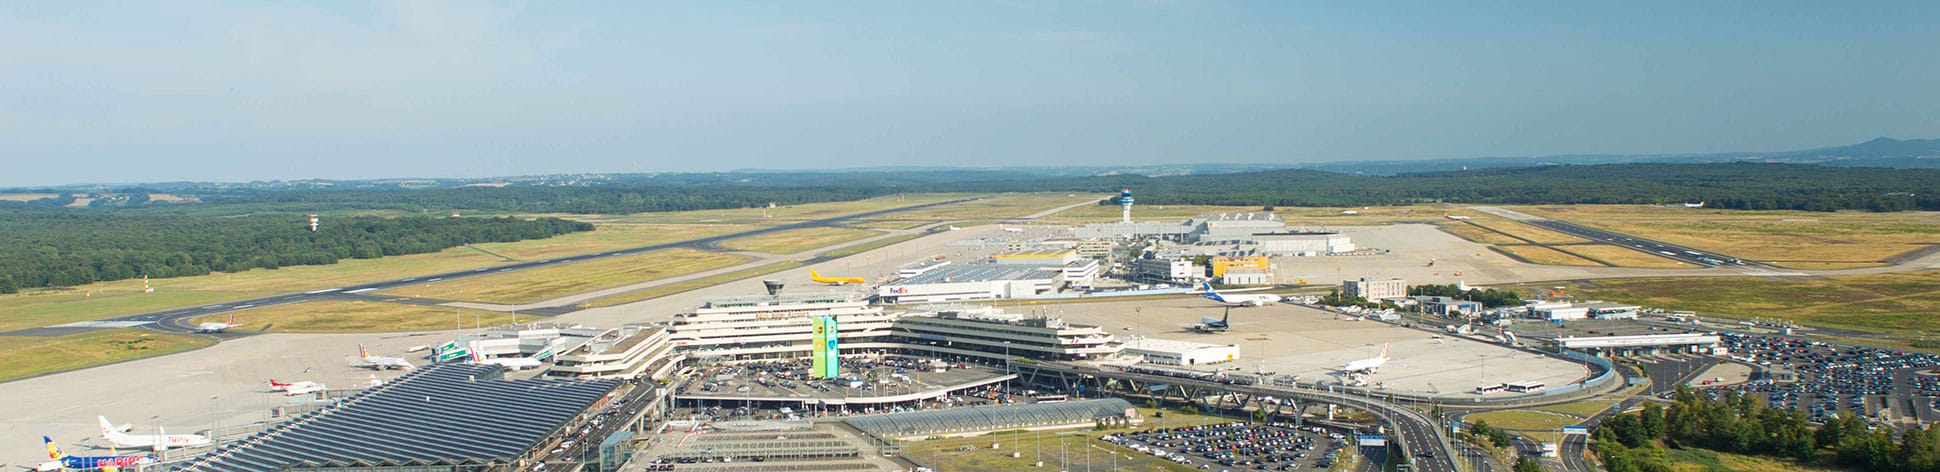 Flughafen Köln aus der Vogelperspektive